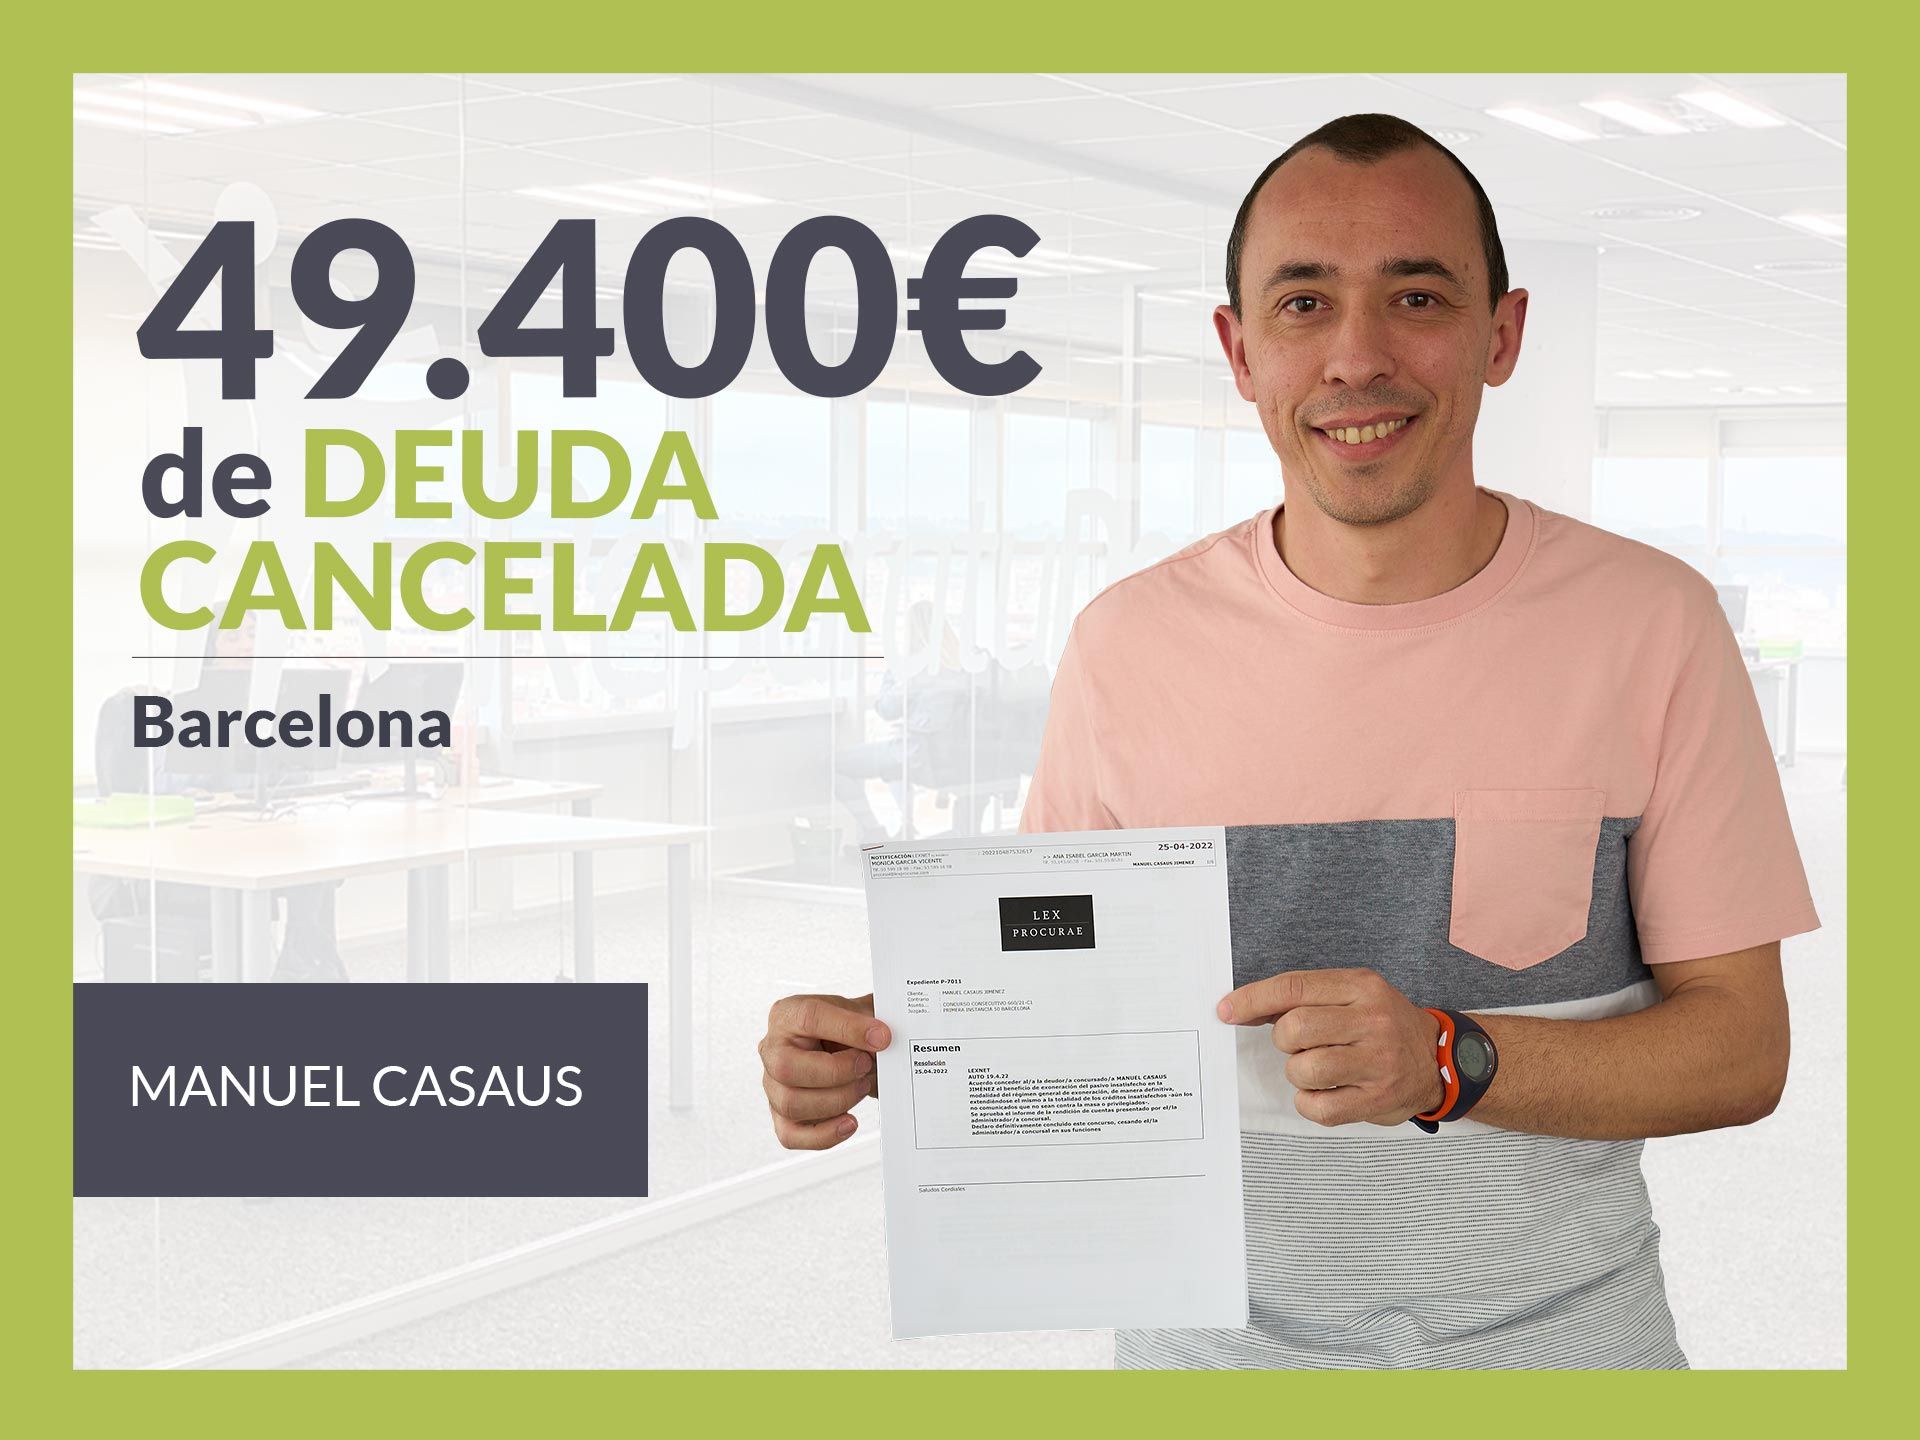 Repara tu Deuda Abogados cancela 49.400? en Barcelona (Catalunya) con la Ley de Segunda Oportunidad